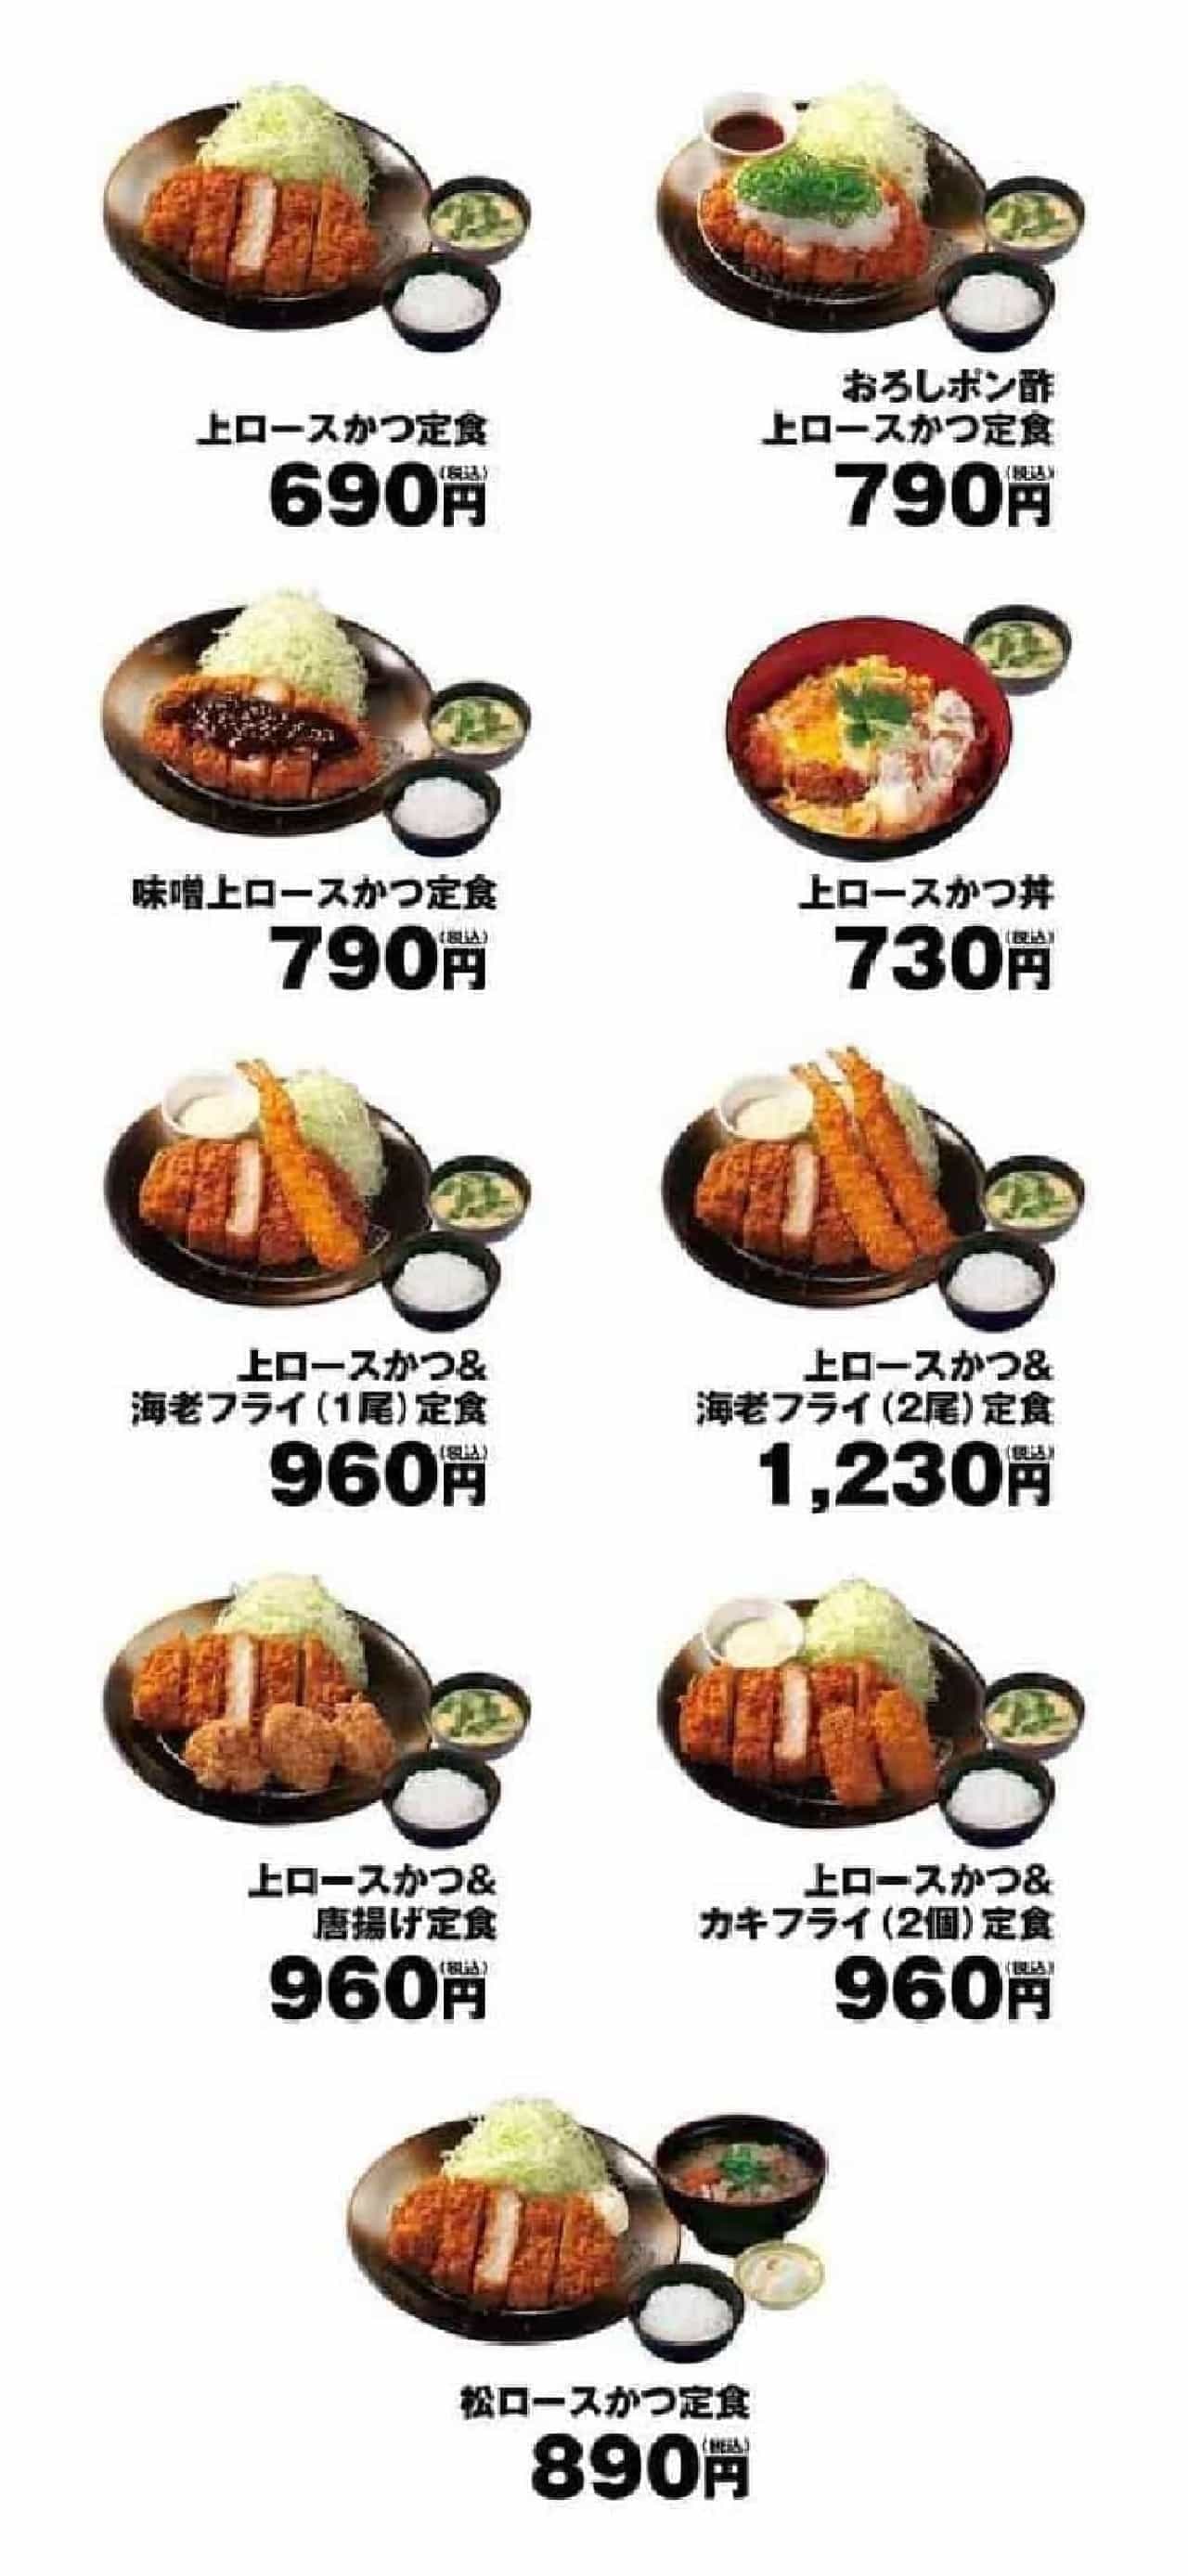 Matsunoya's new menu "Top loin cutlet